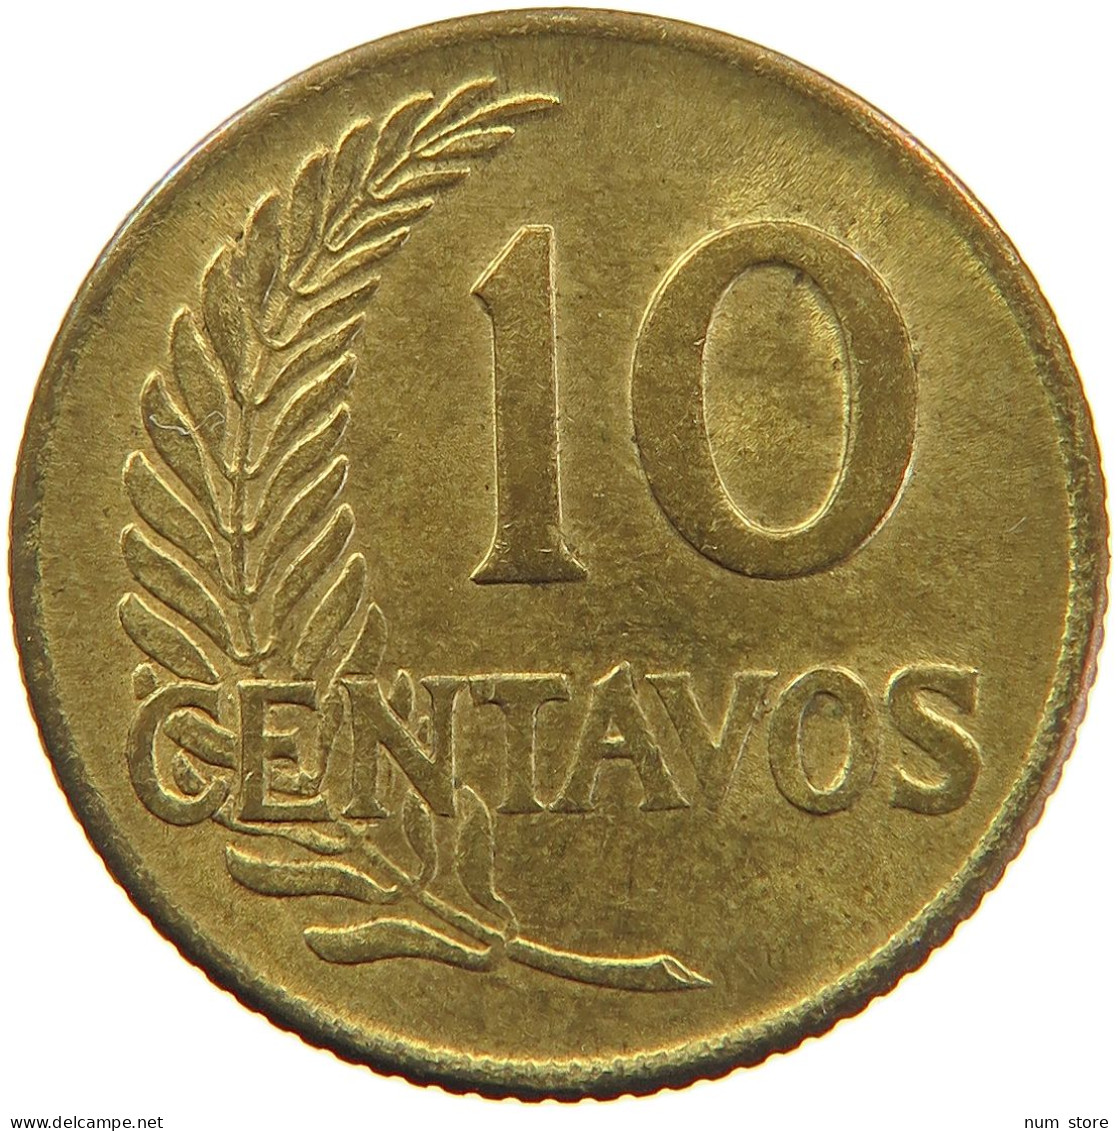 PERU 10 CENTAVOS 1959 UNC #t030 0137 - Peru